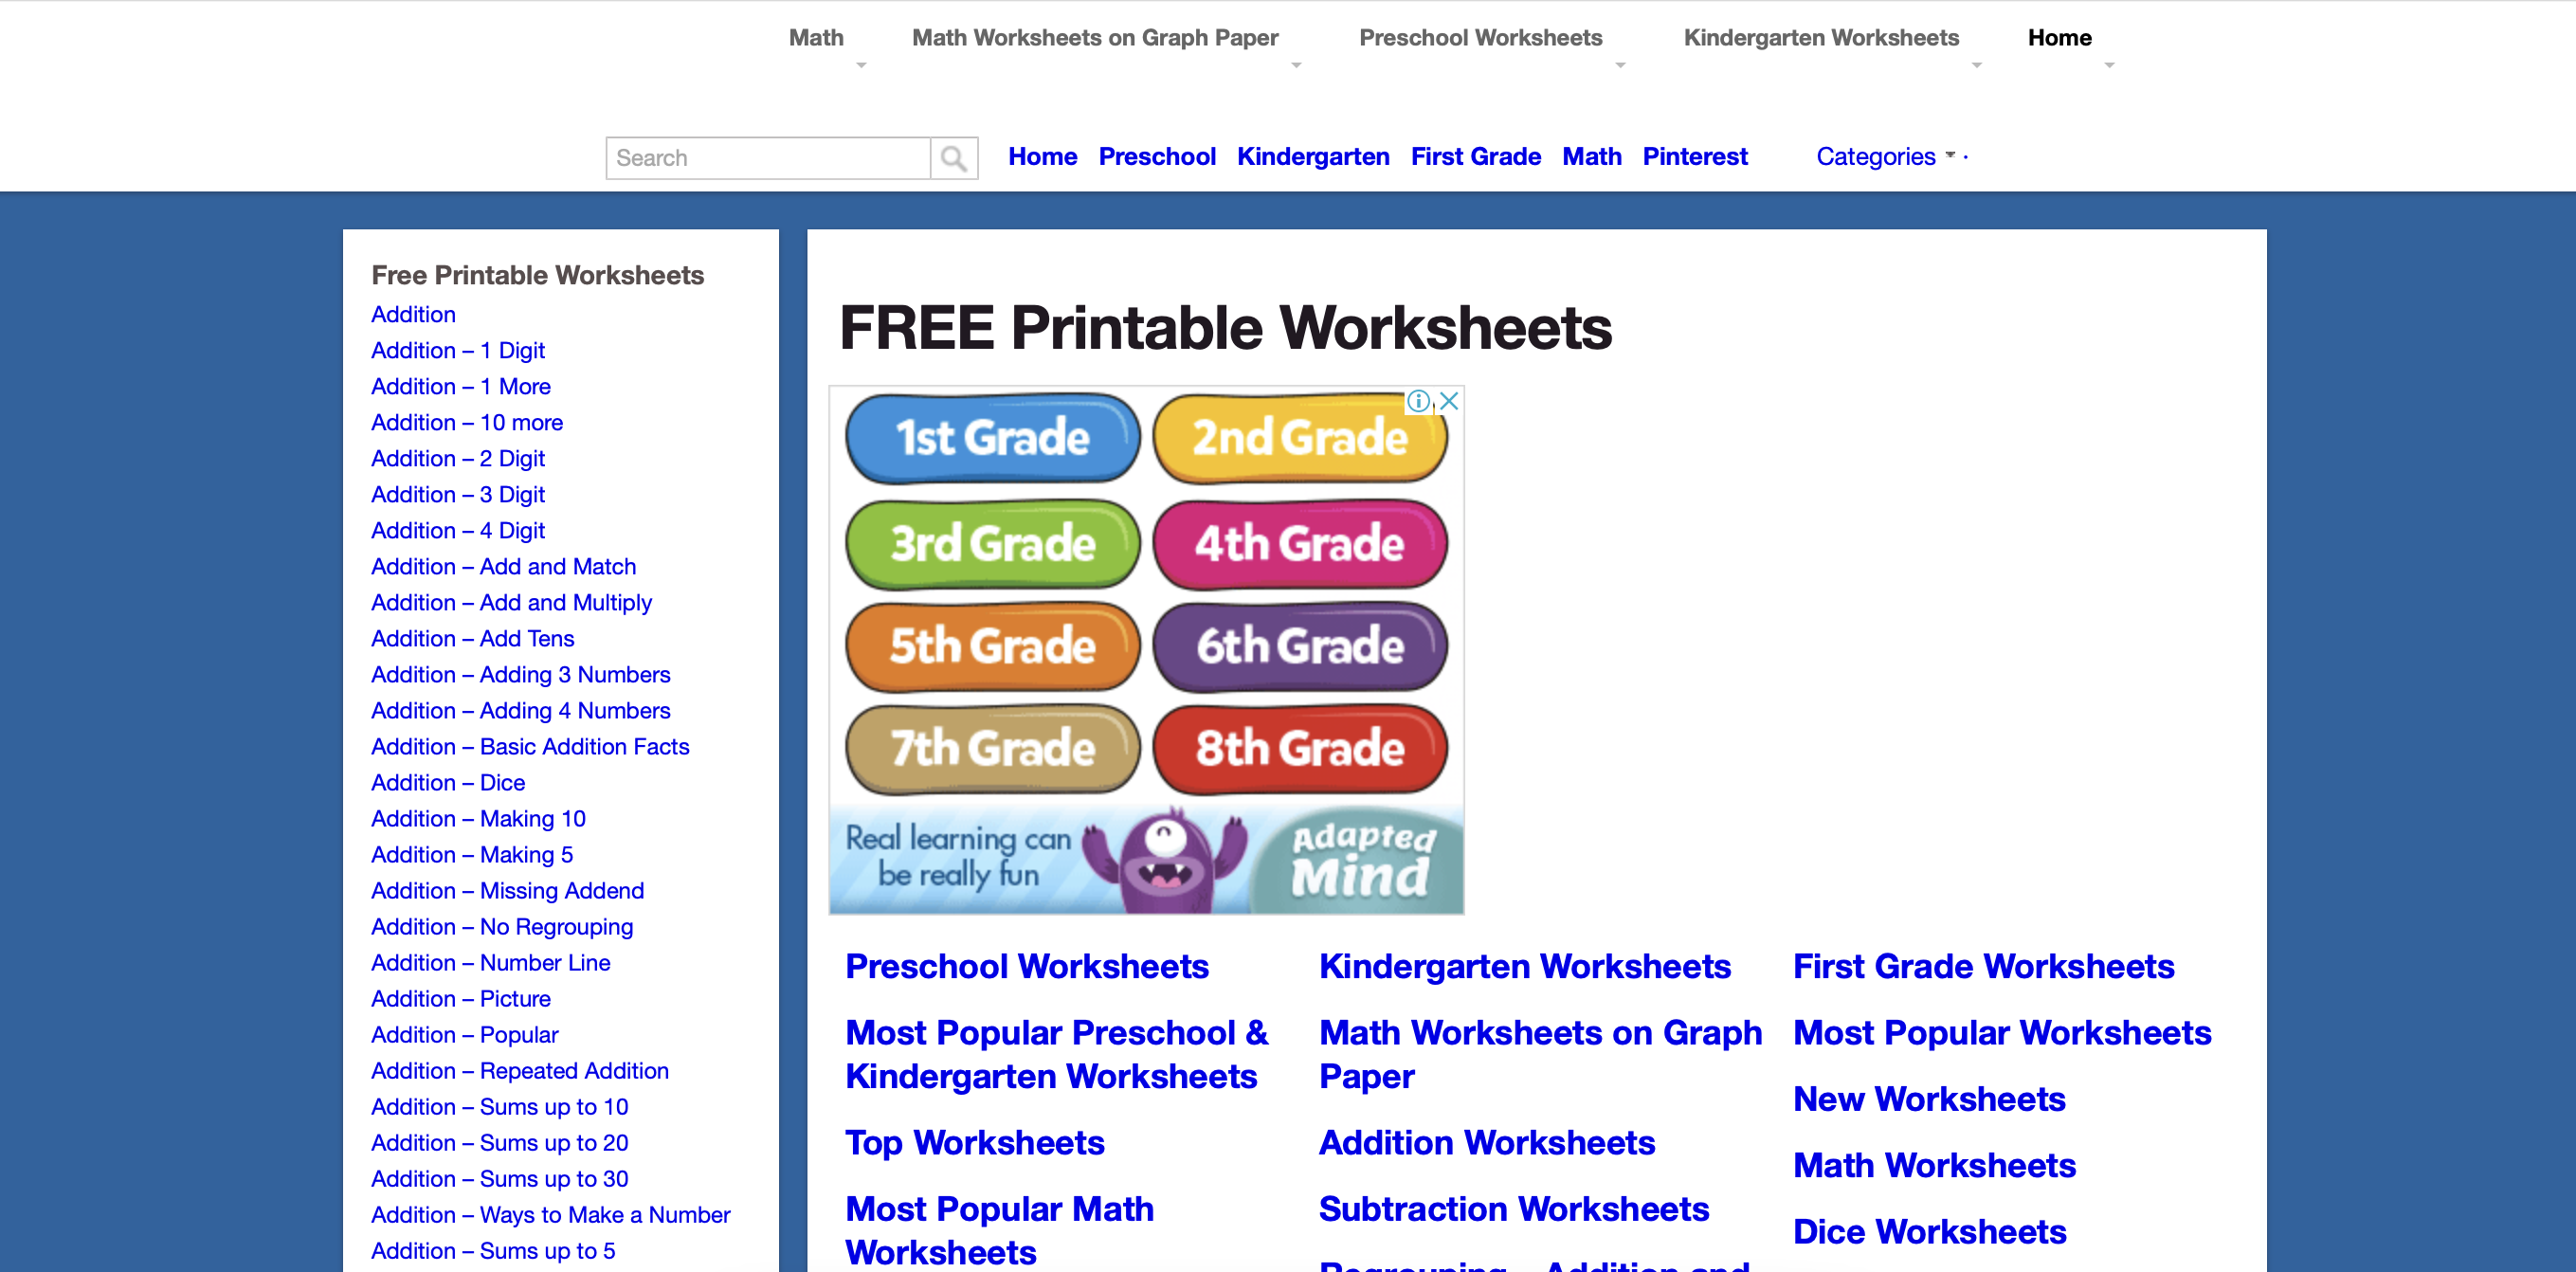 FREE Printable Worksheets